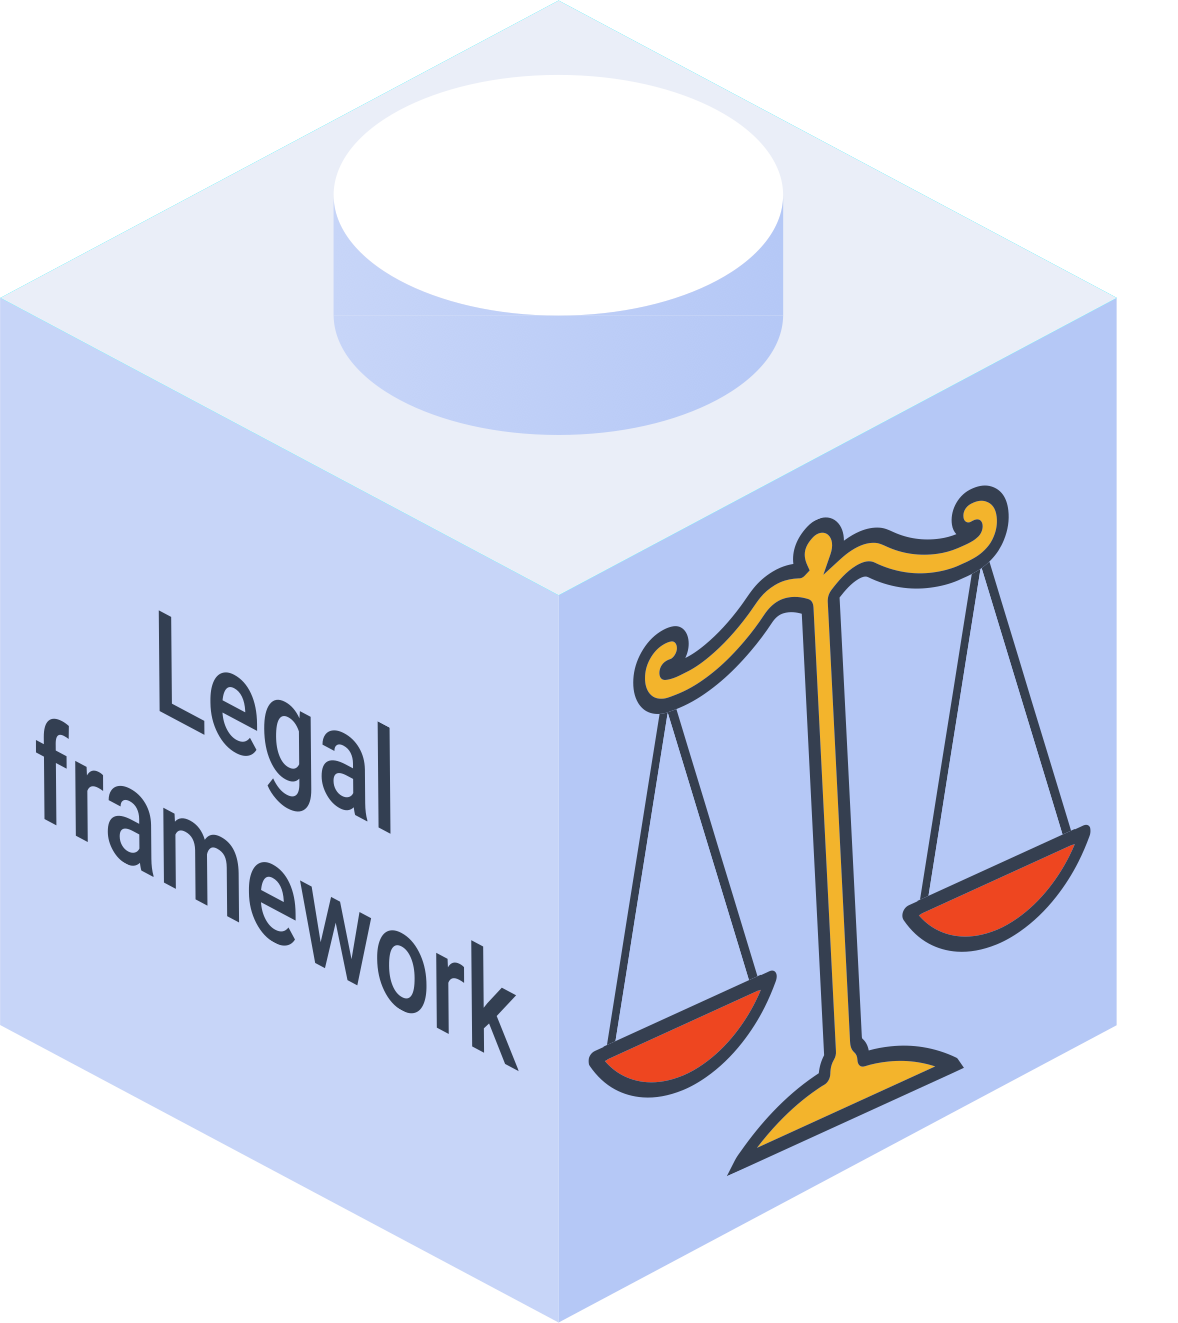 Legal framework